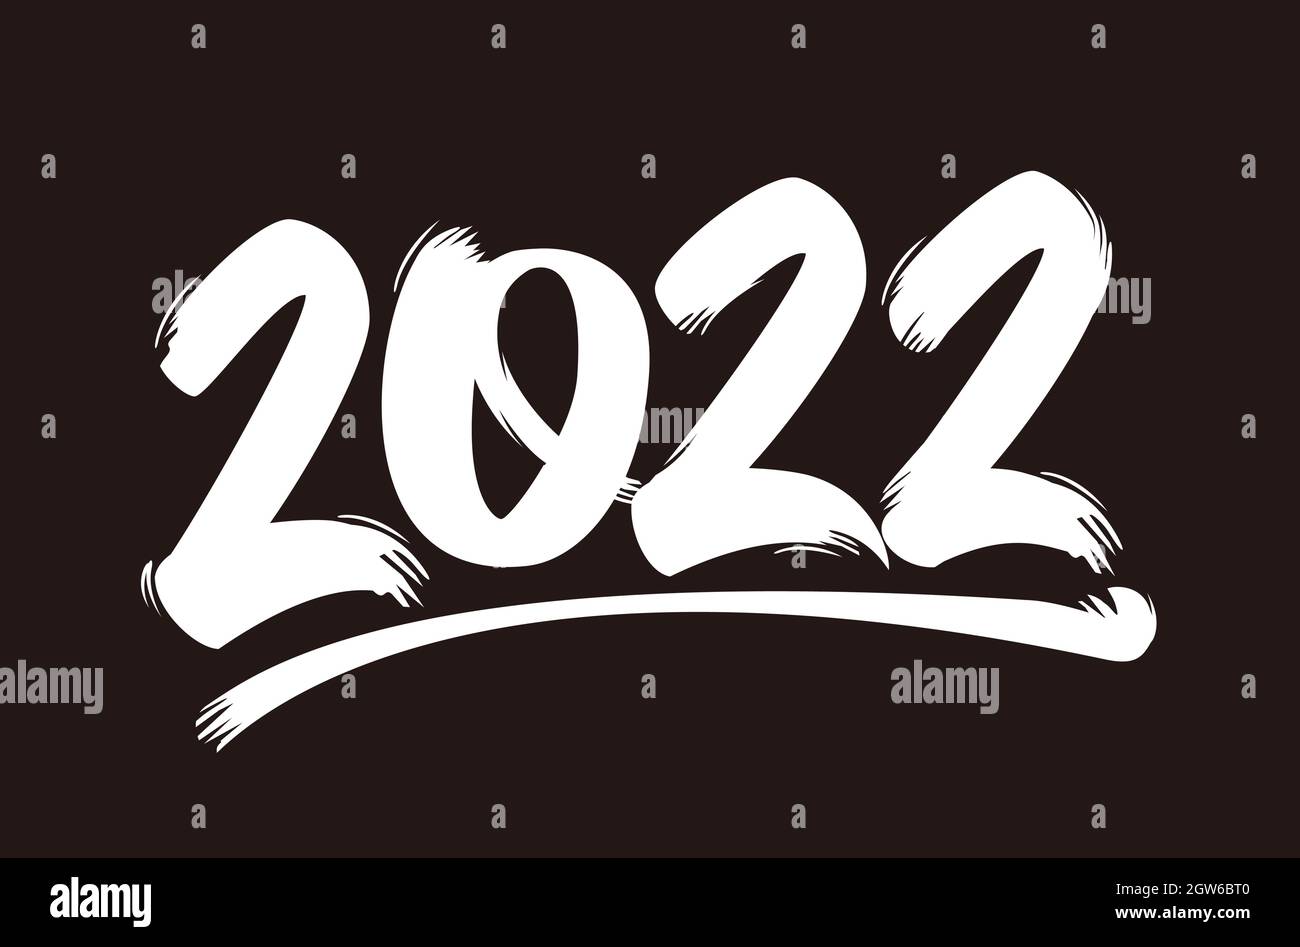 Pinselstrich-Textdarstellung für Grußkarte zum neuen Jahr 2022 Stock Vektor